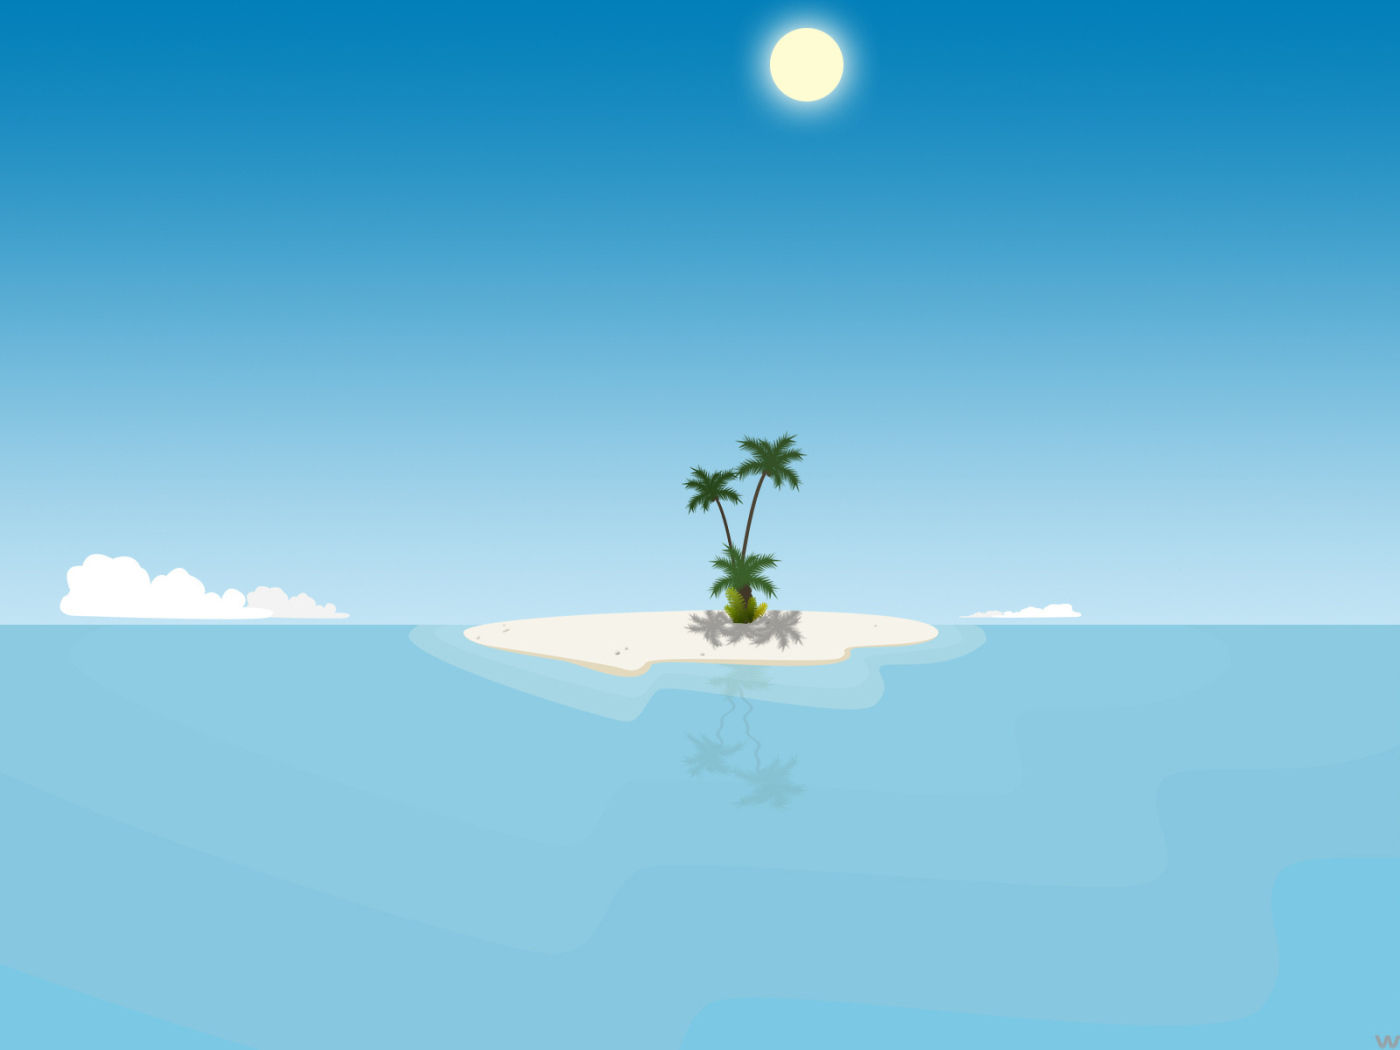 Необитаемый остров в синем море